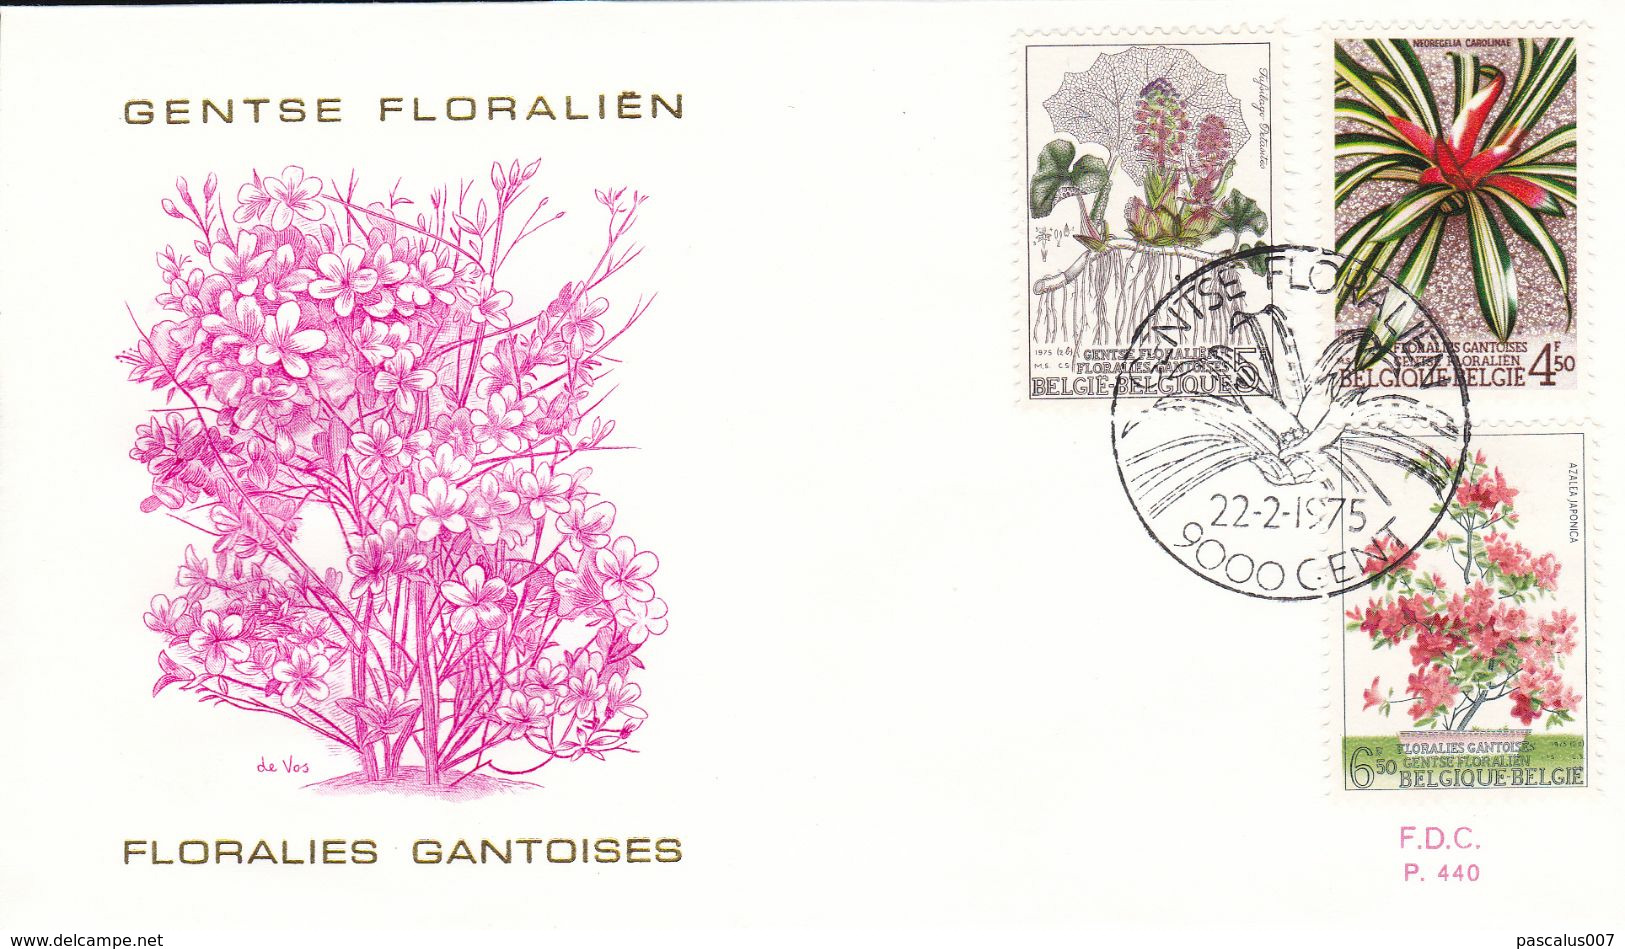 B01-187 1749 1750 1751 FDC P440 Floralie Floriade Floralies Gantoises V 22-2-1975 9000 Gent €4 - Non Classés